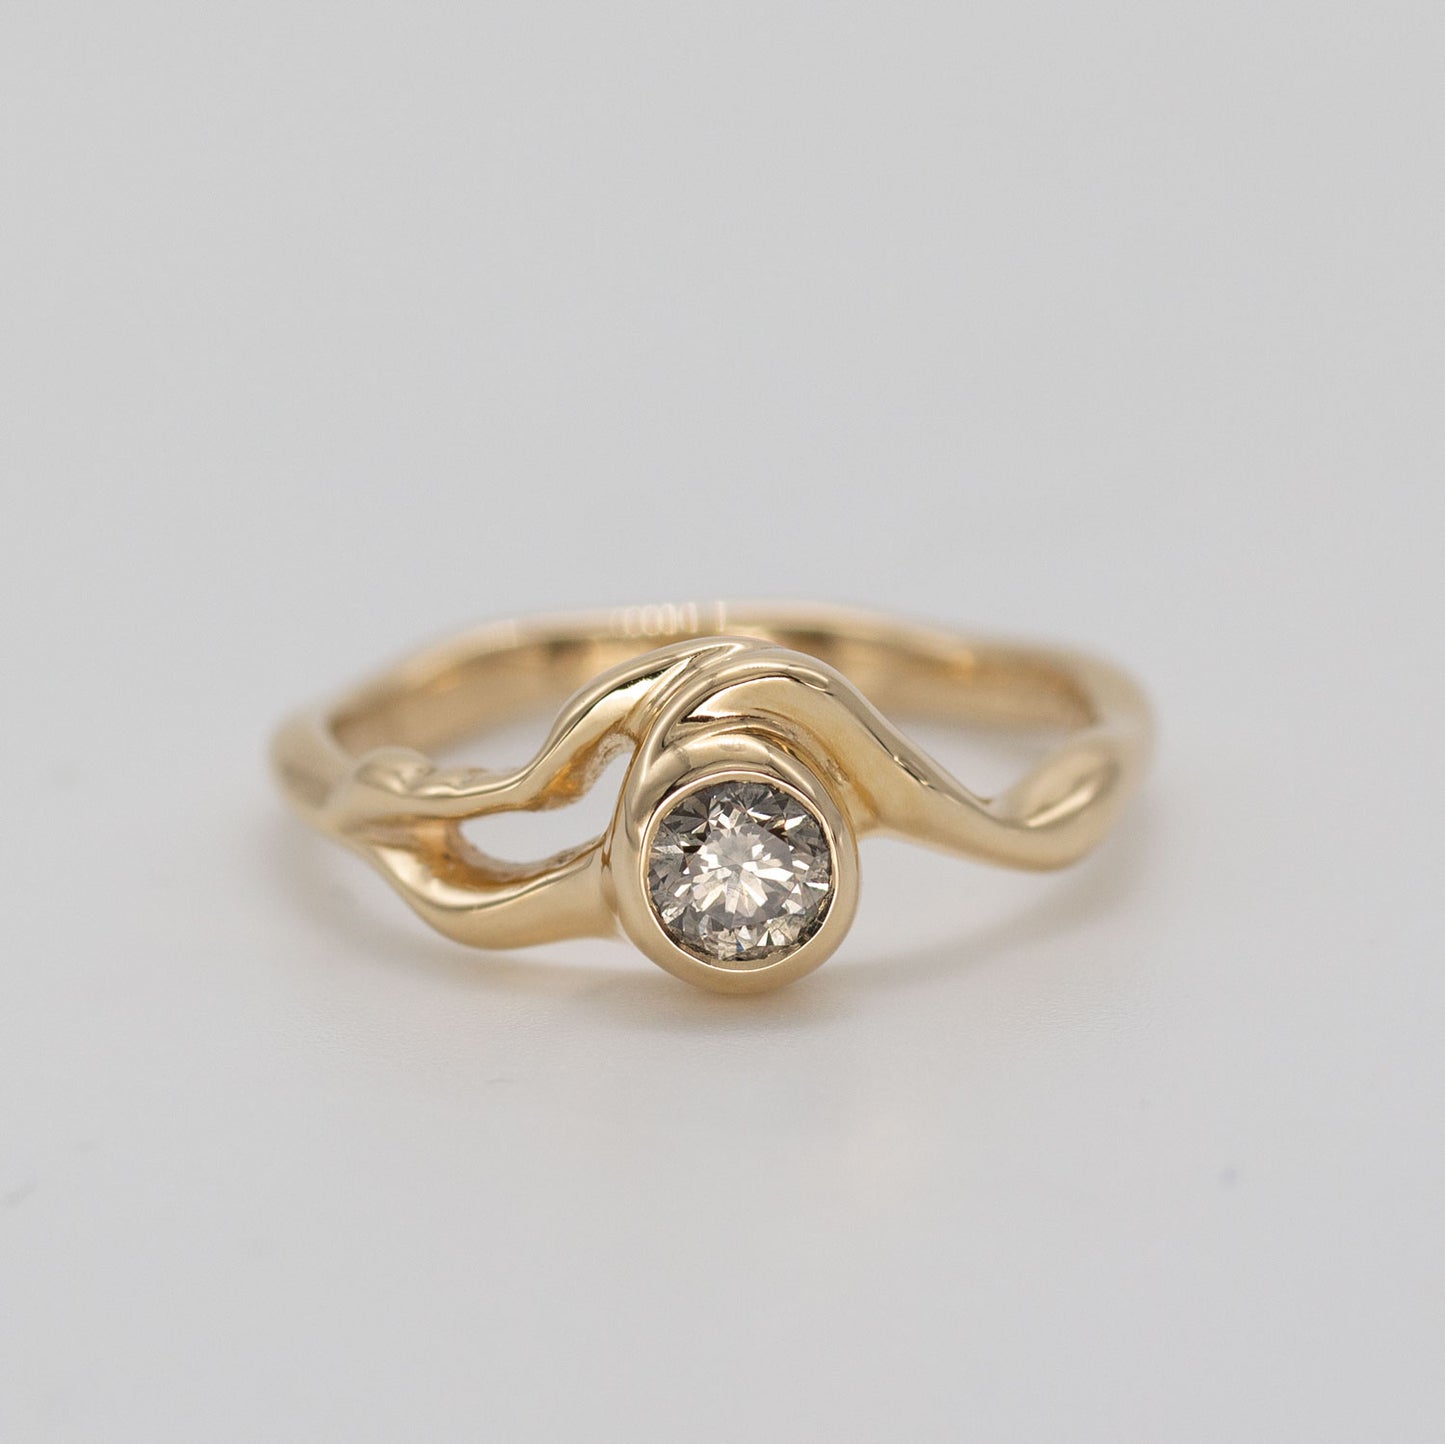 Organisk formgivet ring i guld med stor champagnefarvet diamant placeret i centrum af ringen på grå baggrund. Ud fra diamanten forgrener formgivningen sig rundt i ring skiven. Set forfra.